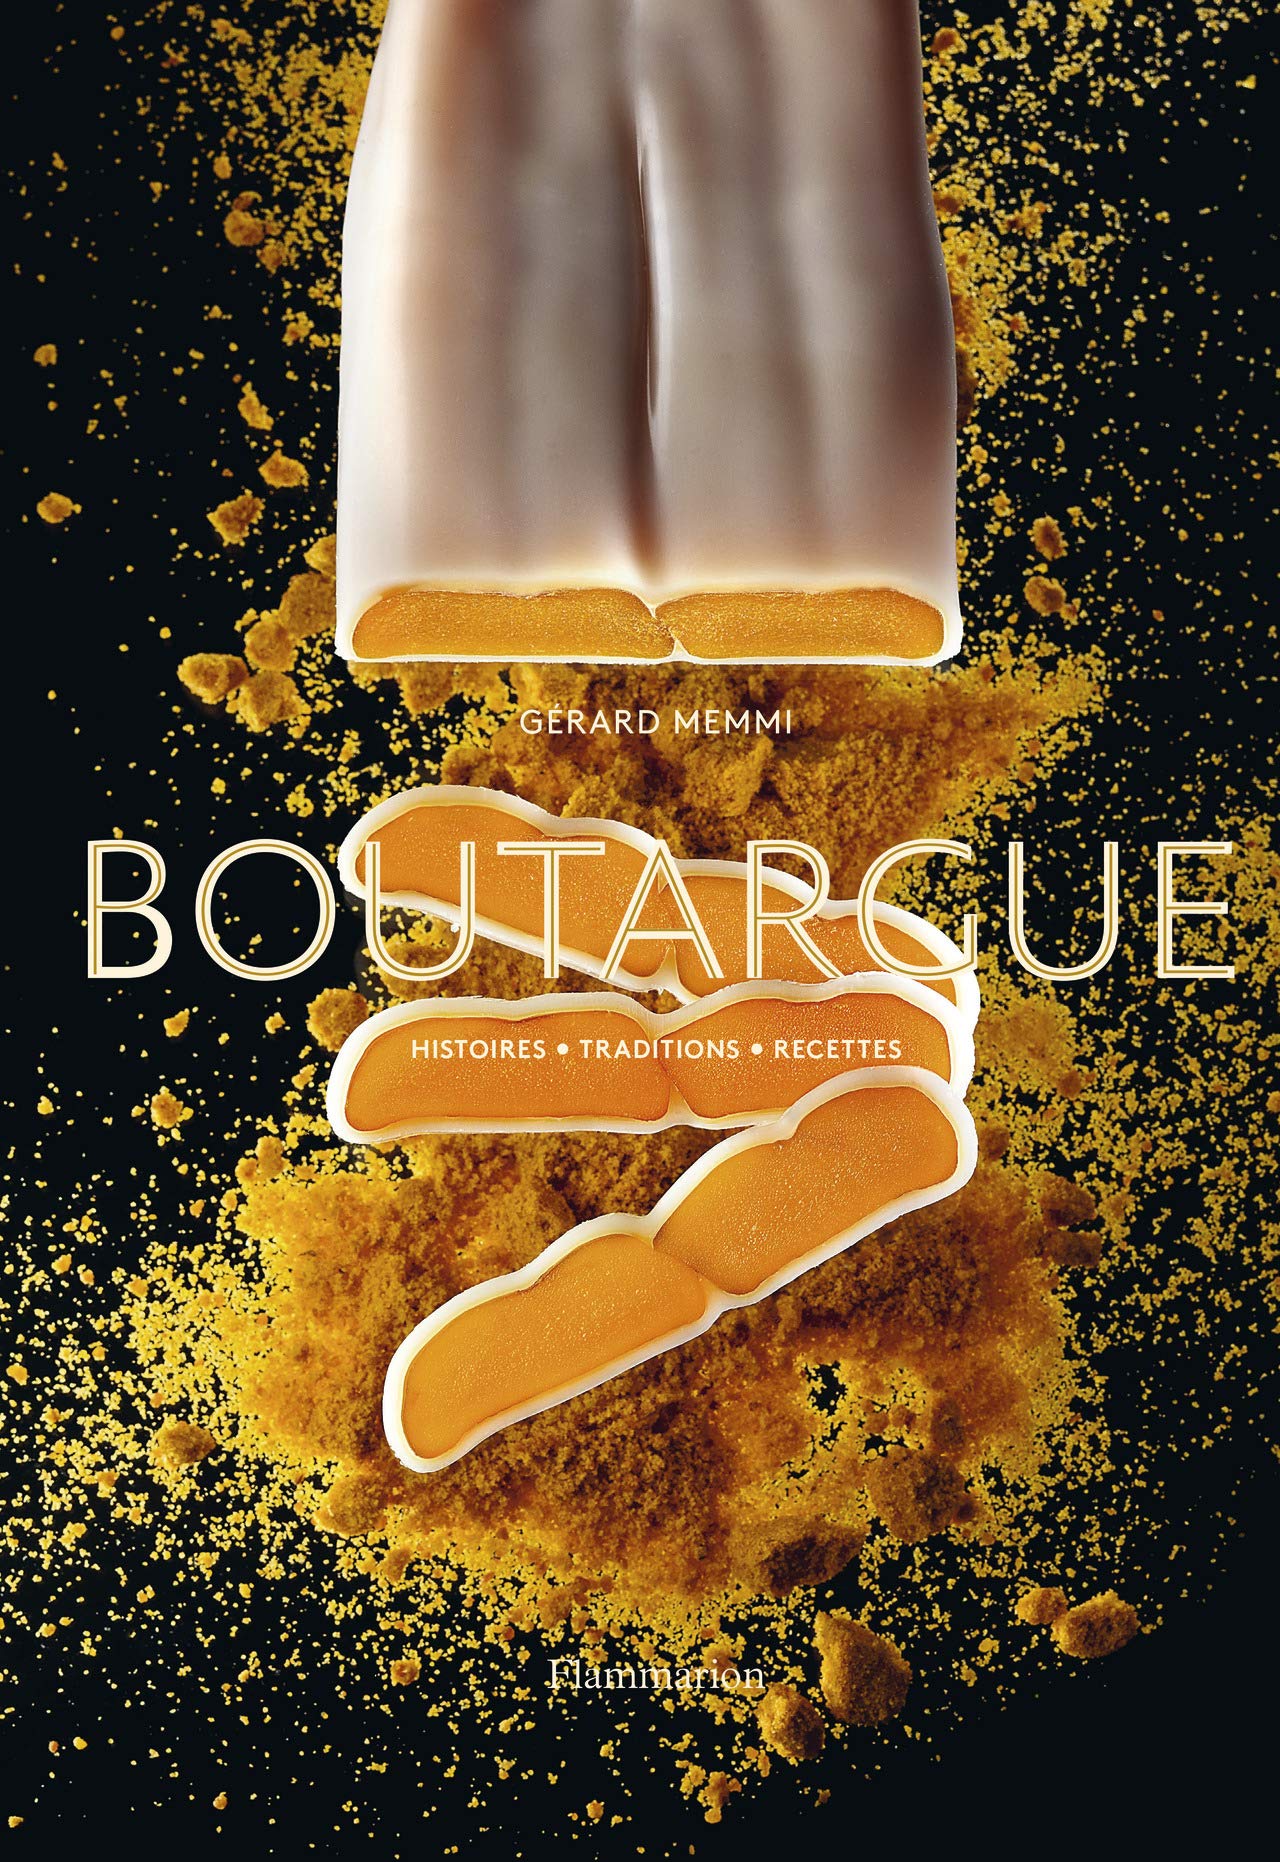 Boutargue: Histoires, Traditions, Recettes (Gérard Memmi , Mathilde de L'Écotais)